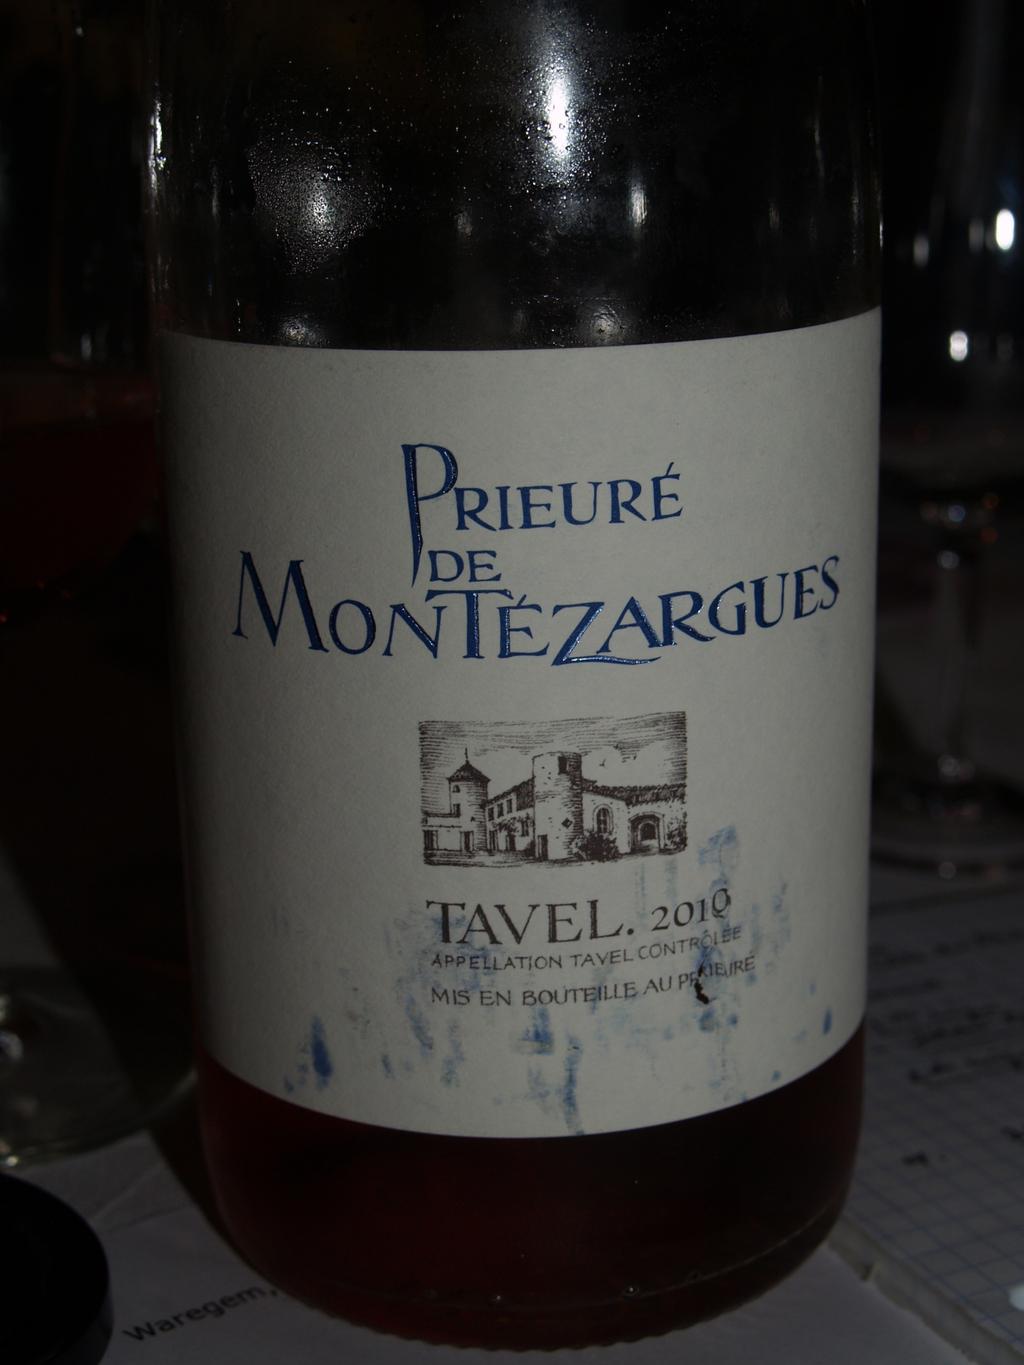 Prieuré de Montézargues, Tavel 2010 rosé( 10,5)(13,5 alc.) 4 Tavel heeft een terroir die veel fijne tannine geeft met rondeur en fruit.